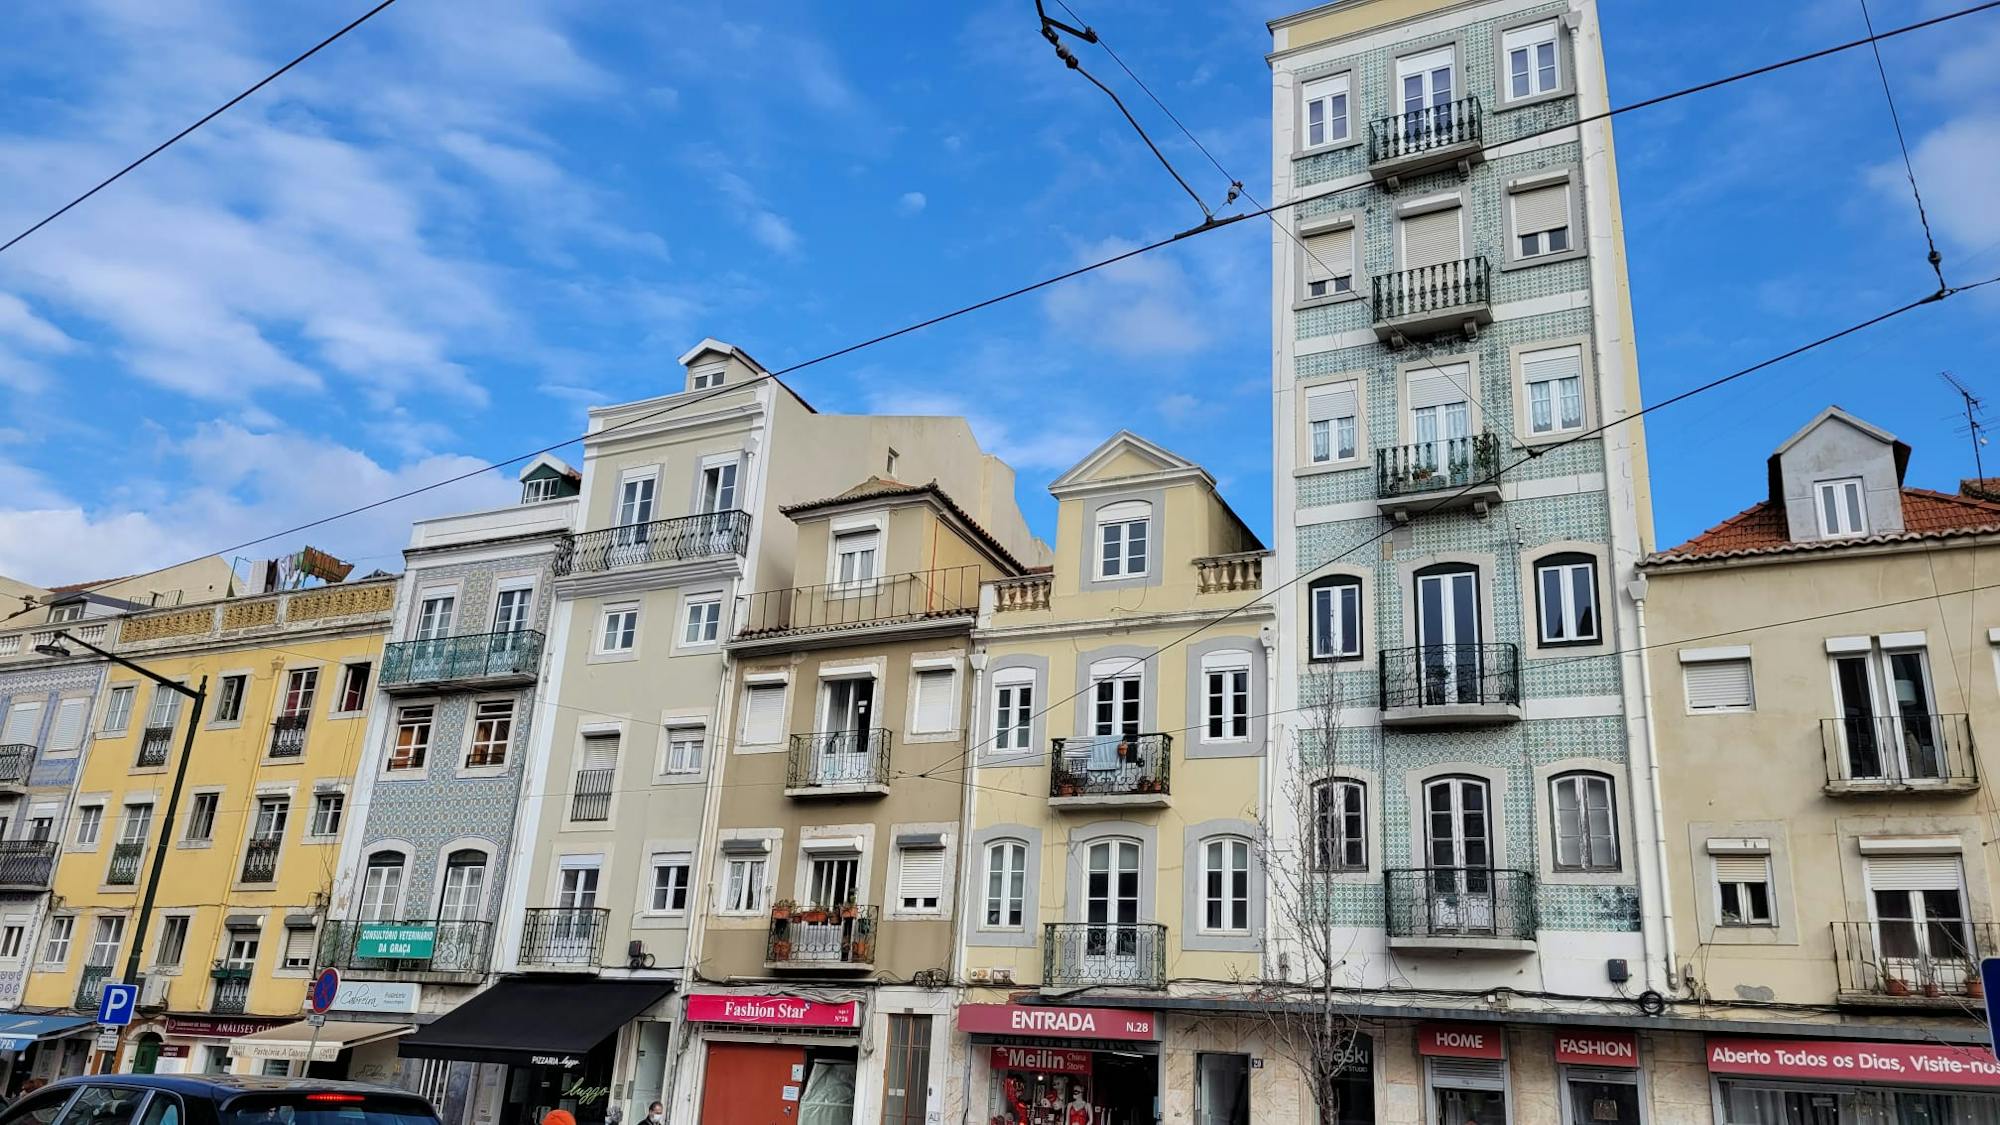 Przepiękne domy, które podkreślają sztukę płytek ceramicznych Lizbony.